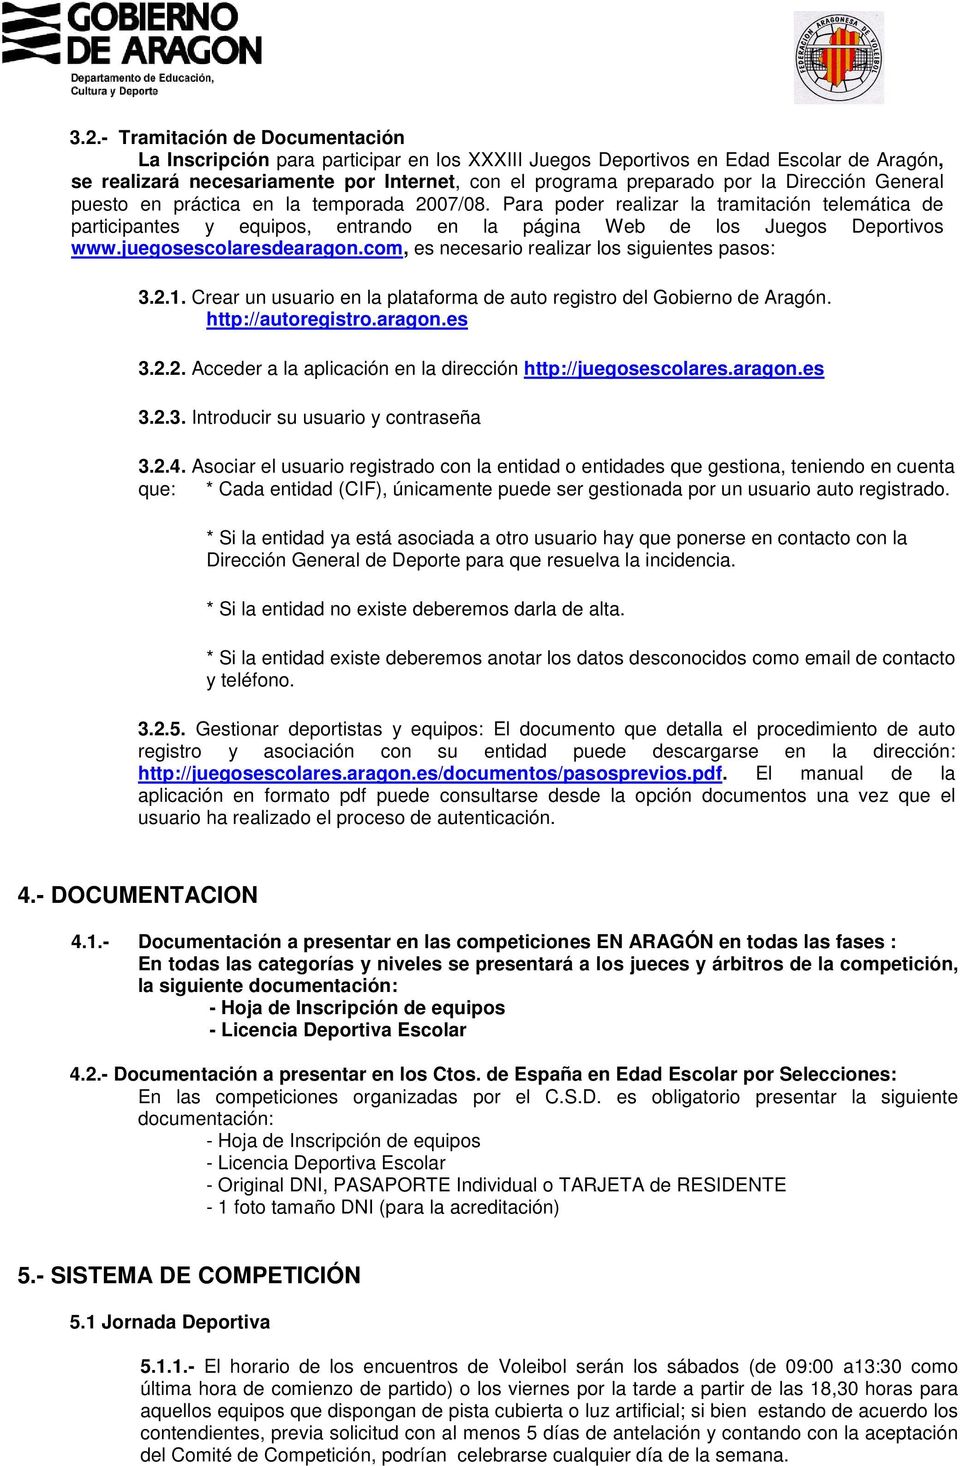 juegosescolaresdearagon.com, es necesario realizar los siguientes pasos: 3.2.1. Crear un usuario en la plataforma de auto registro del Gobierno de Aragón. http://autoregistro.aragon.es 3.2.2. Acceder a la aplicación en la dirección http://juegosescolares.